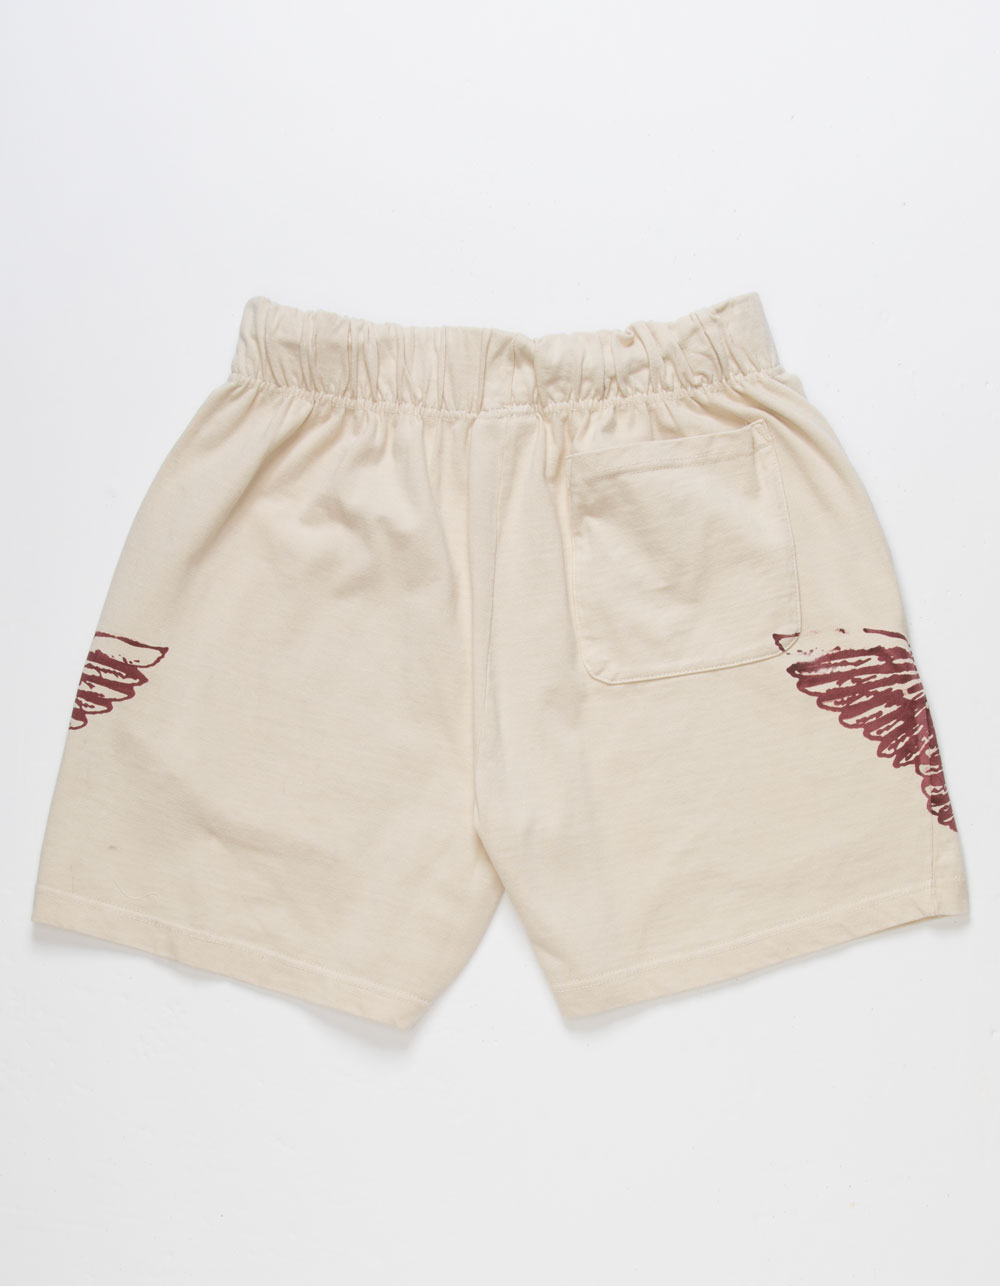 Shorts – Tag – Coney Island Picnic